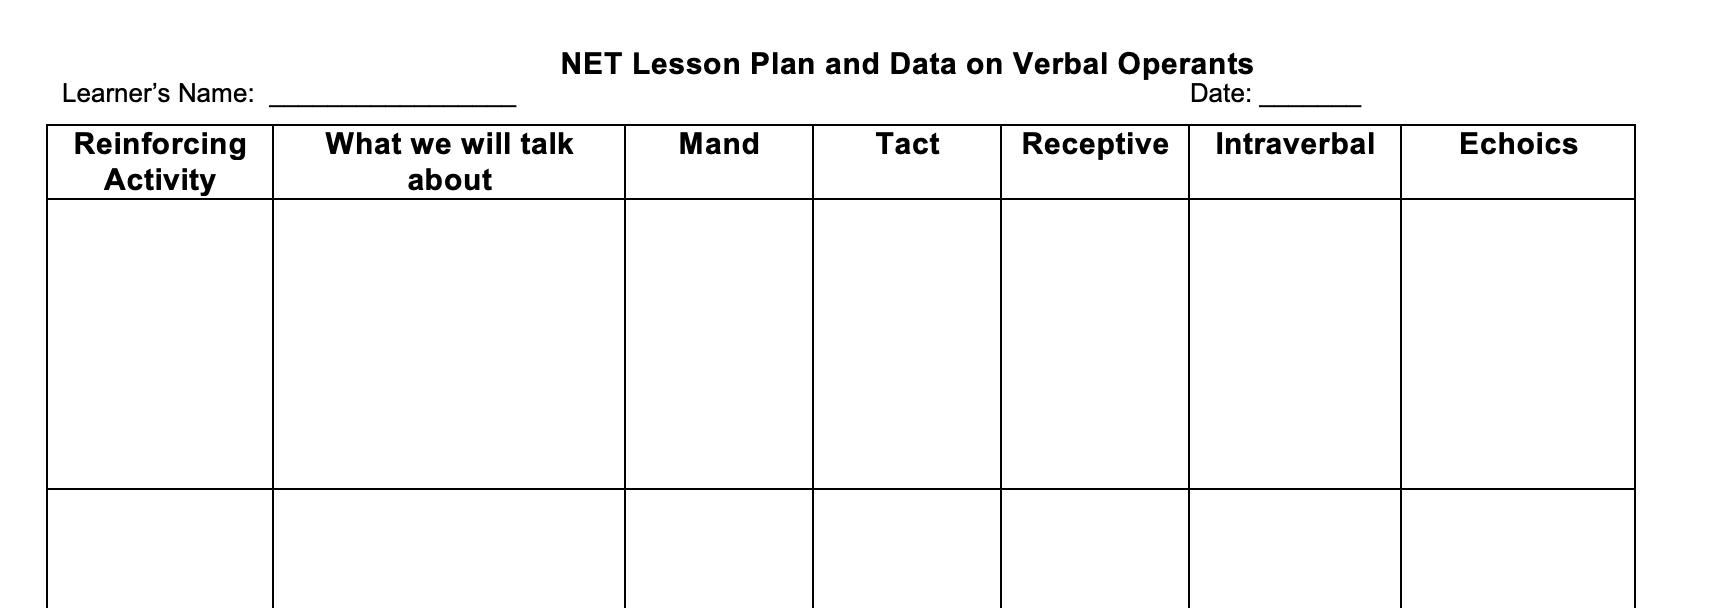 NET Lesson Plan & Data on Verbal Operants